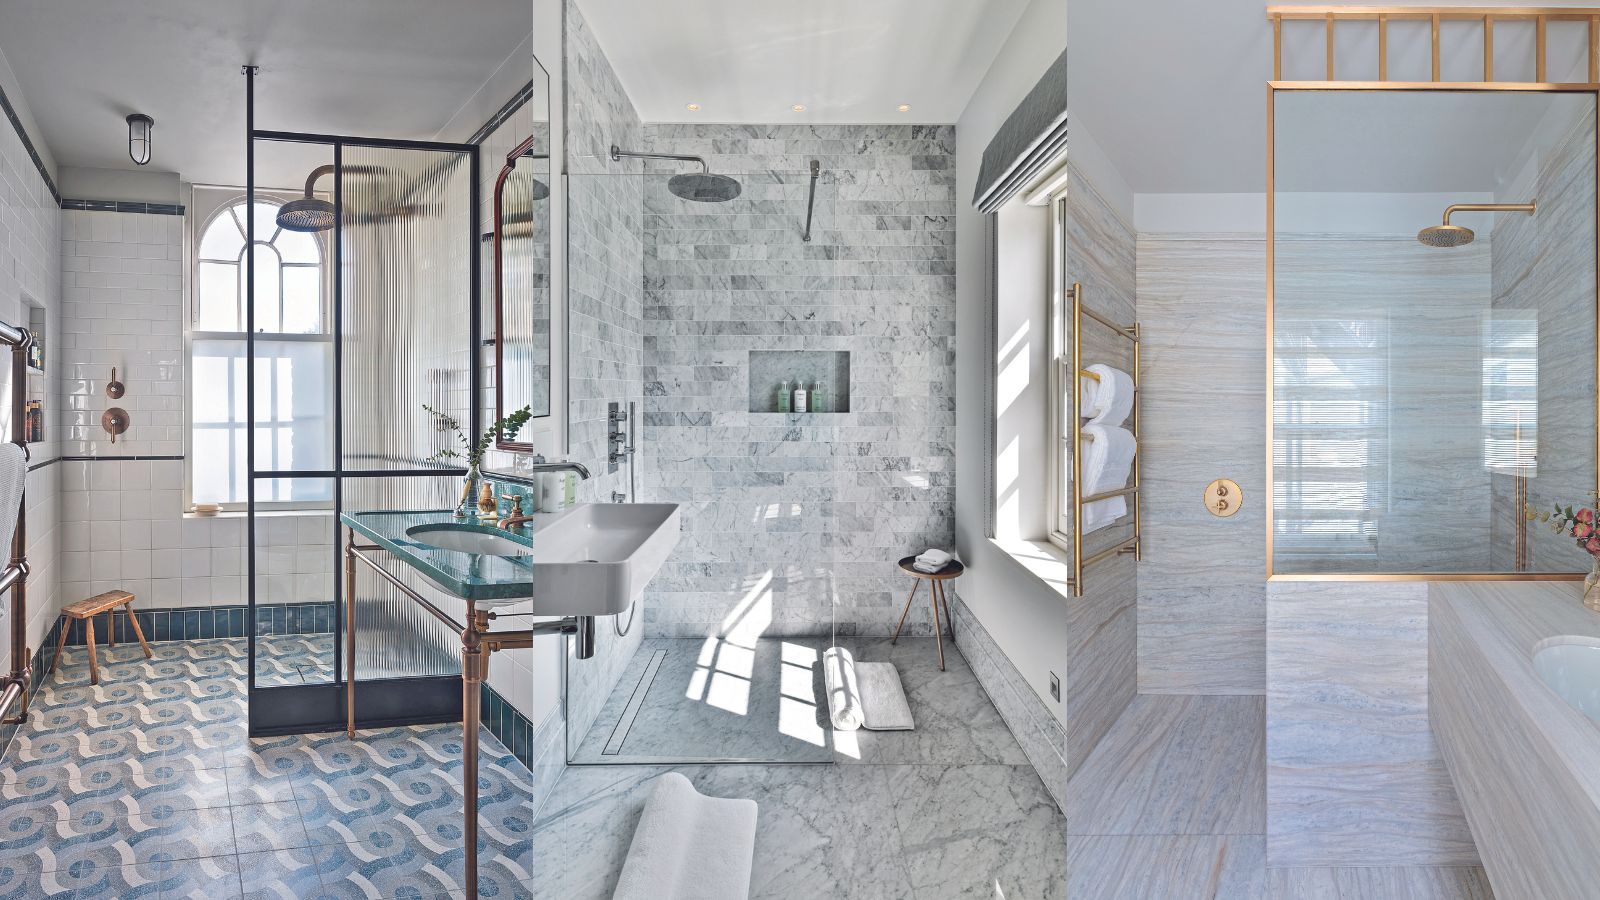 Walk-in shower ideas – design tricks to create a luxury feel